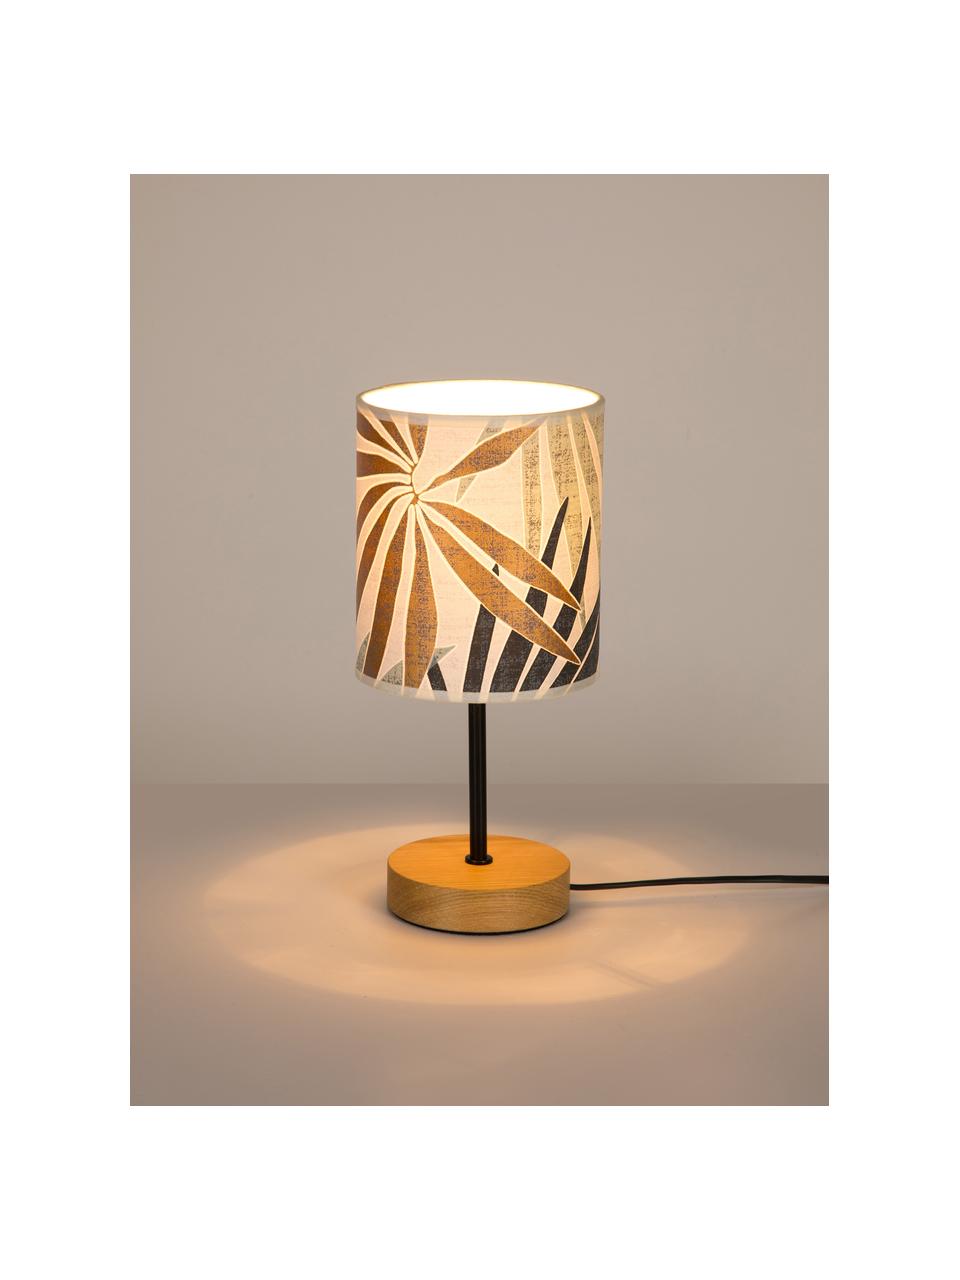 Tischlampe Hoja mit Dschungel-Print, Lampenschirm: Papier, Lampenfuß: Eichenholz, geölt, Beige, Grün, Goldfarben, Ø 13 x H 34 cm